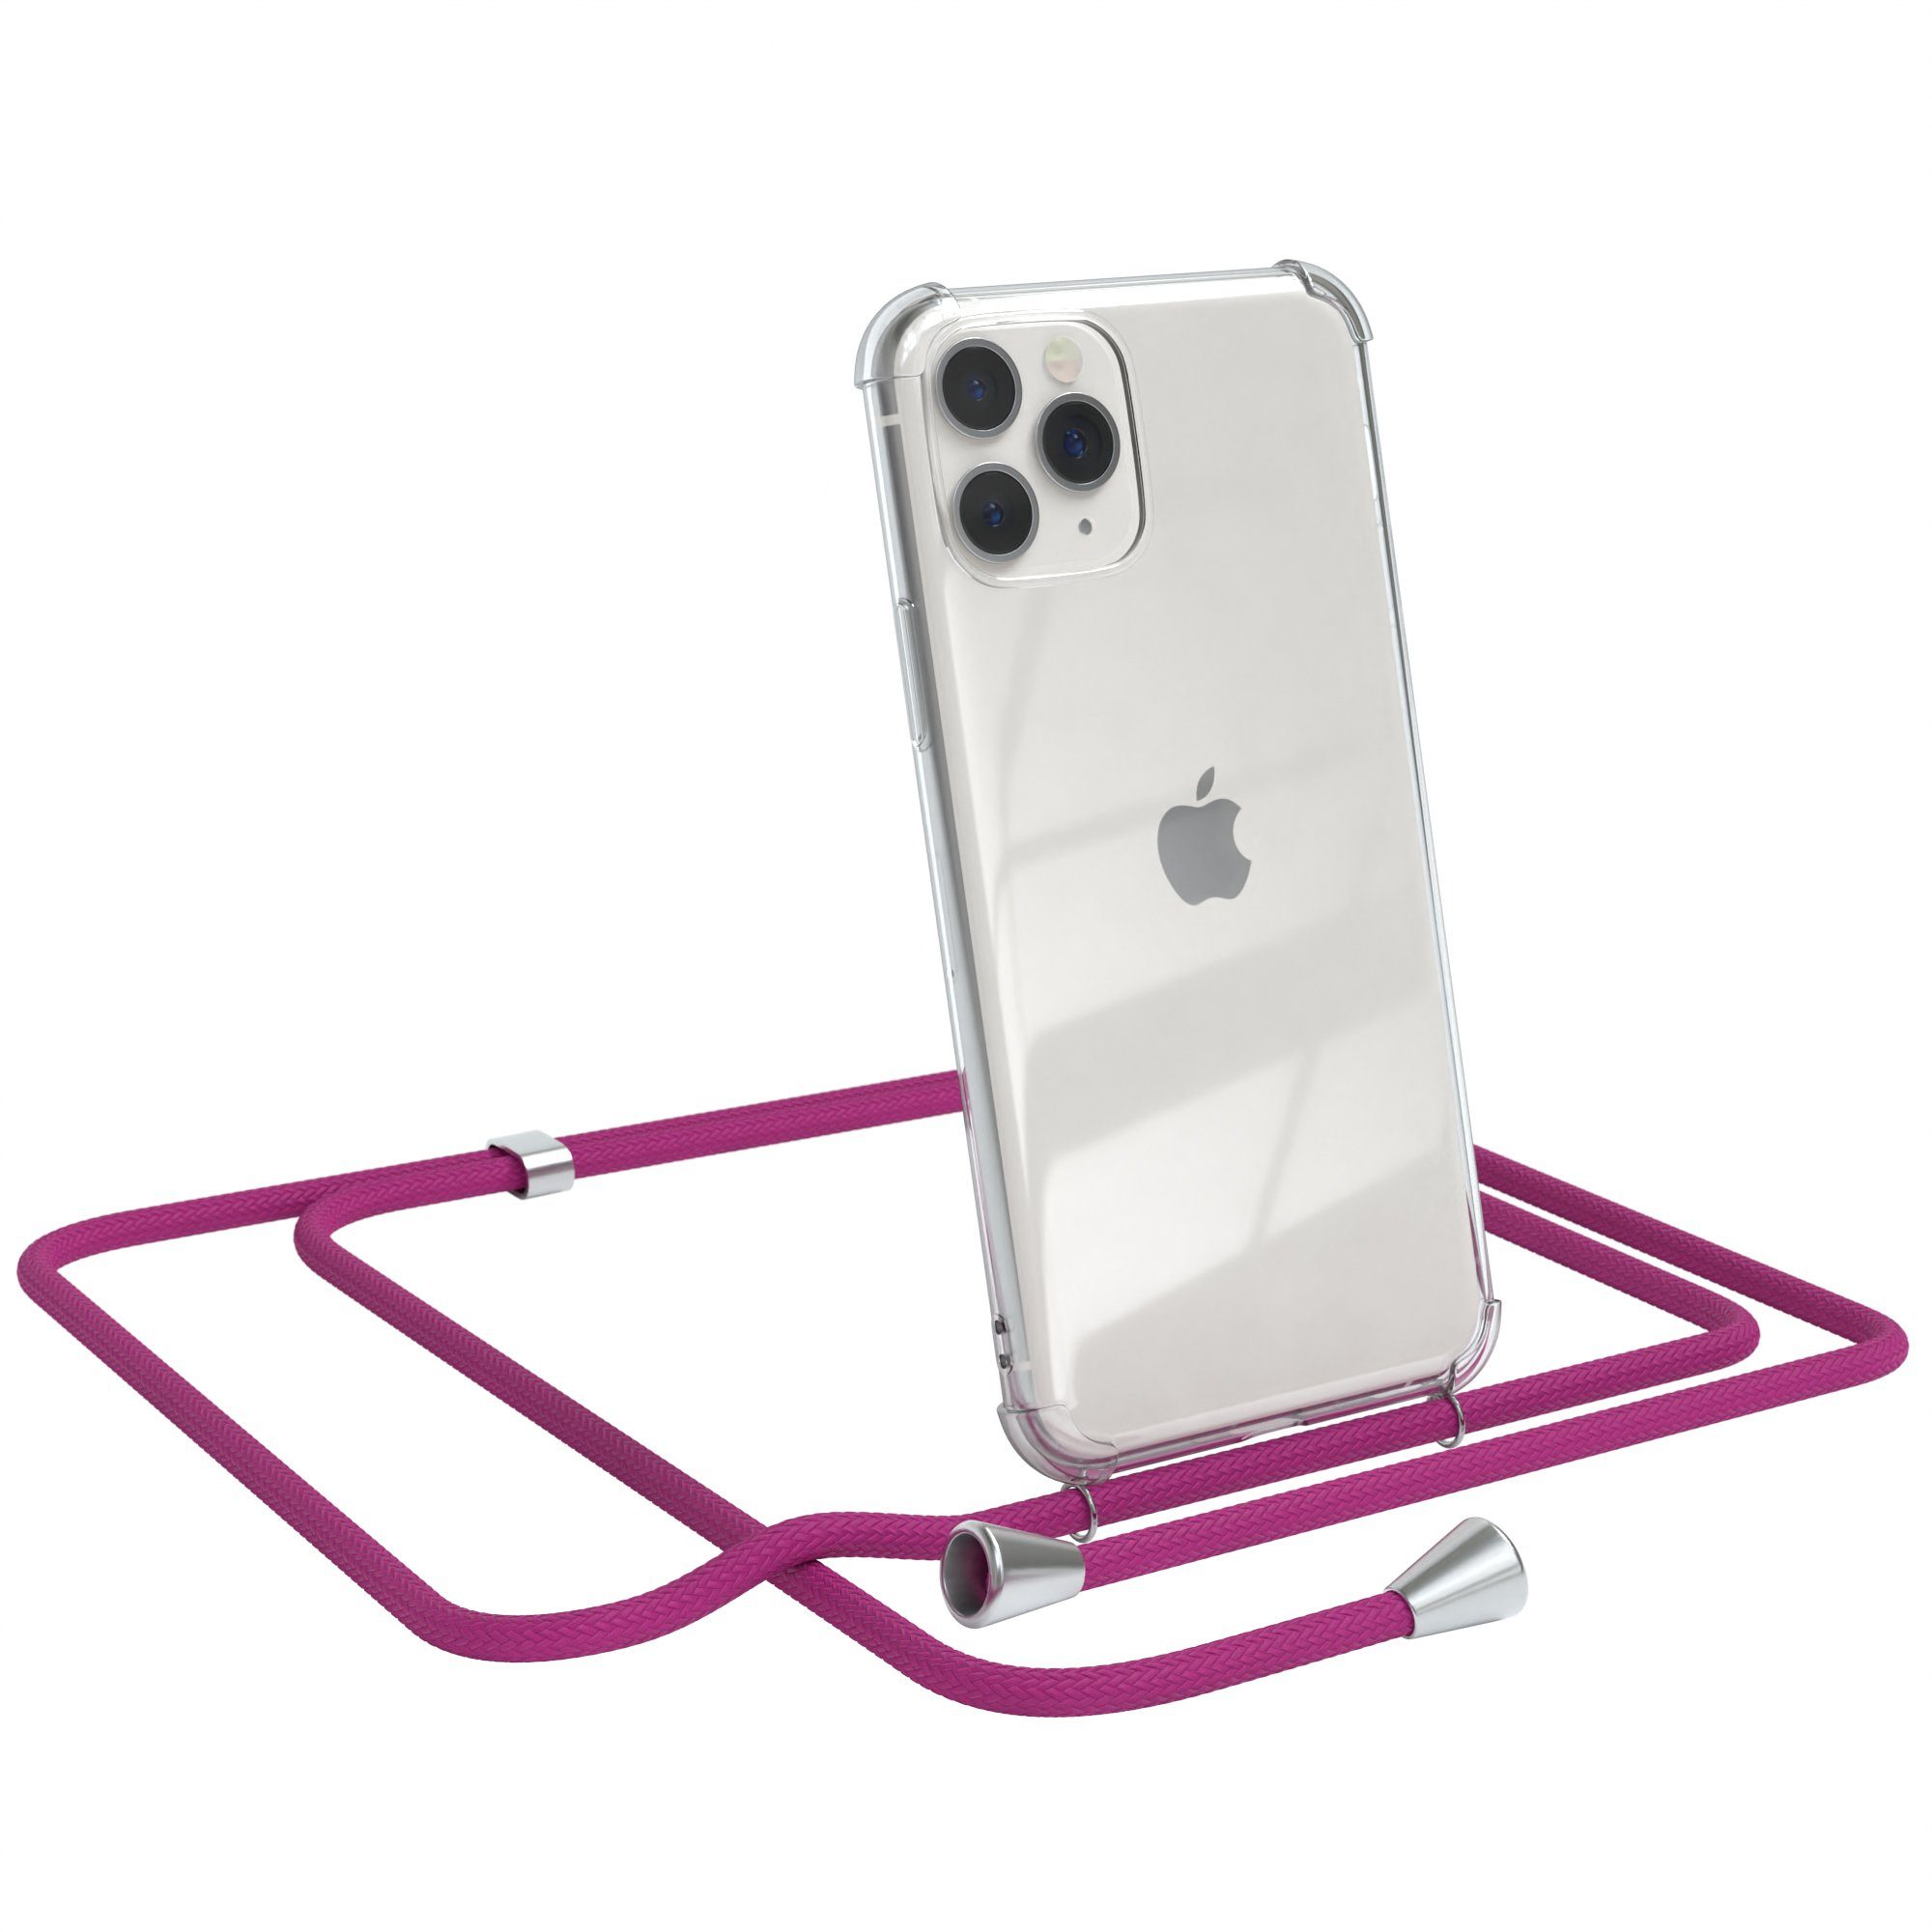 EAZY CASE Handykette Hülle mit Kette für Apple iPhone 11 Pro 5,8 Zoll, Handykordel Slimcover mit Umhängeband zum Umhängen Pink / Clip Silber